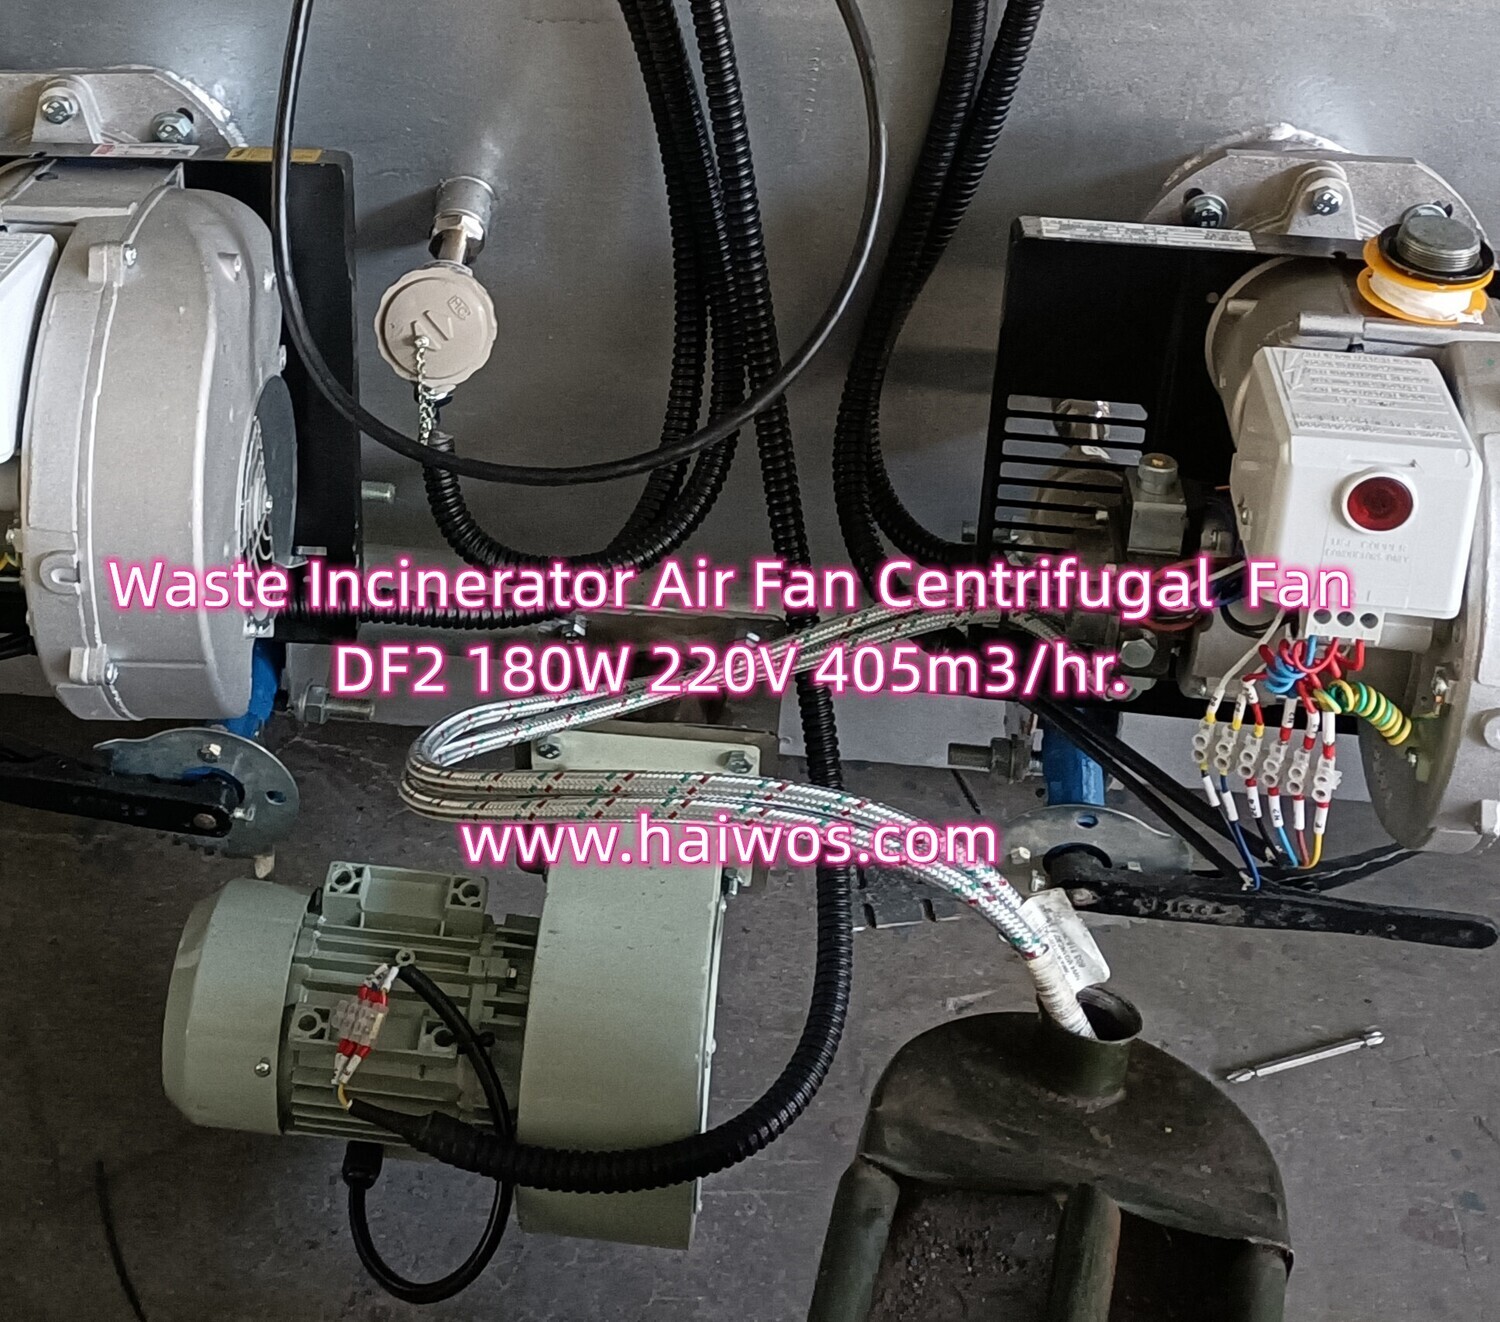 Waste Incinerator Air Fan Centrifugal  Fan DF2 180W 220V 405m3/hr.